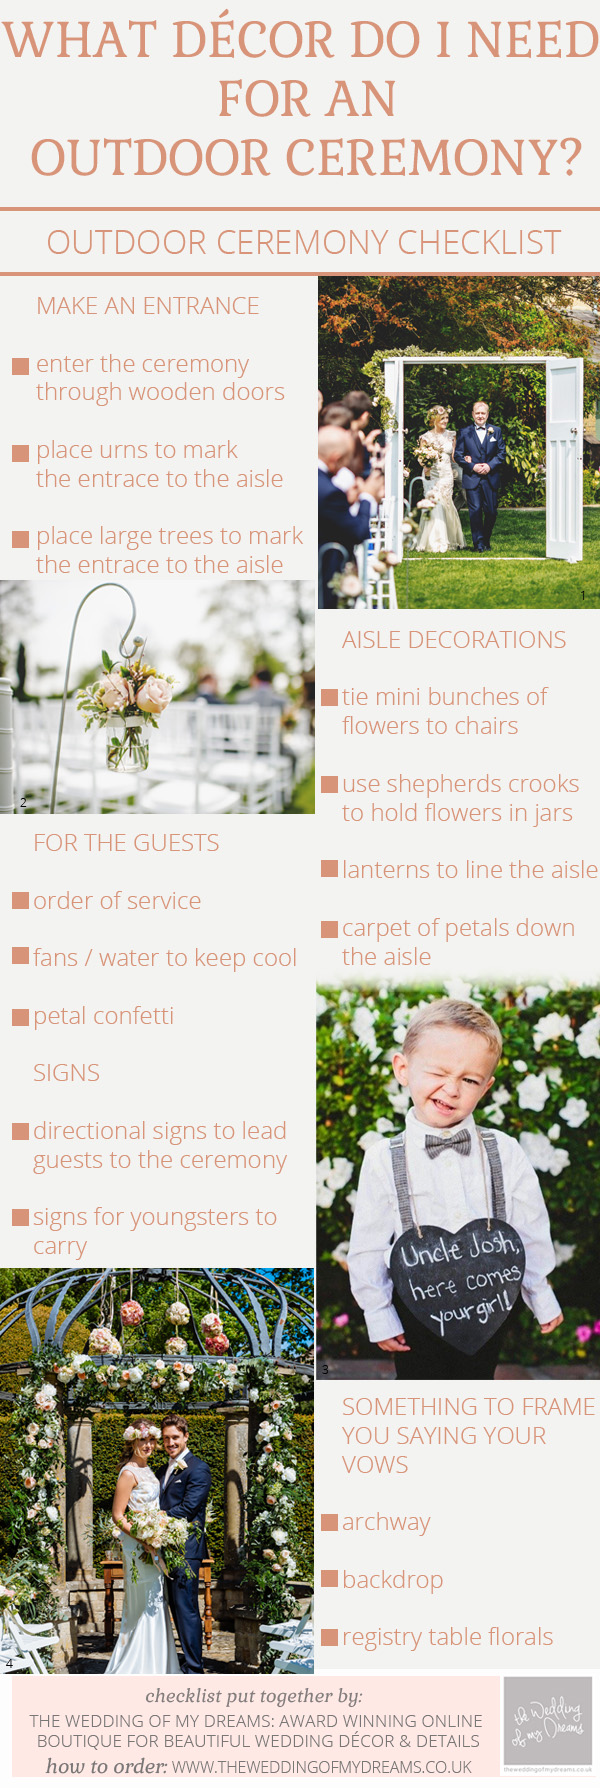 Outdoor Wedding Ceremony Decorations – Checklist